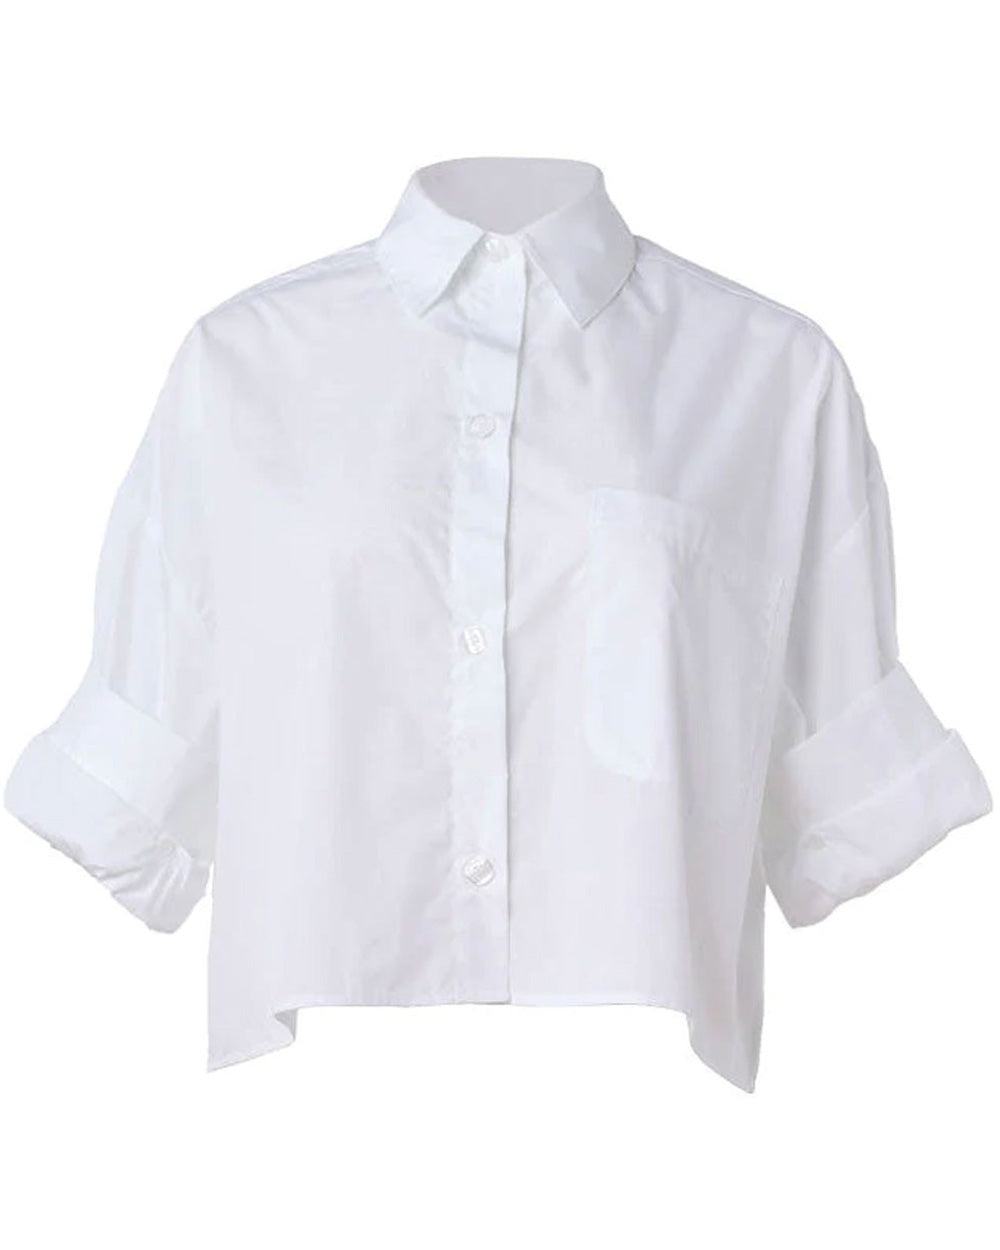 Superfine Cotton Next Ex Shirt in White